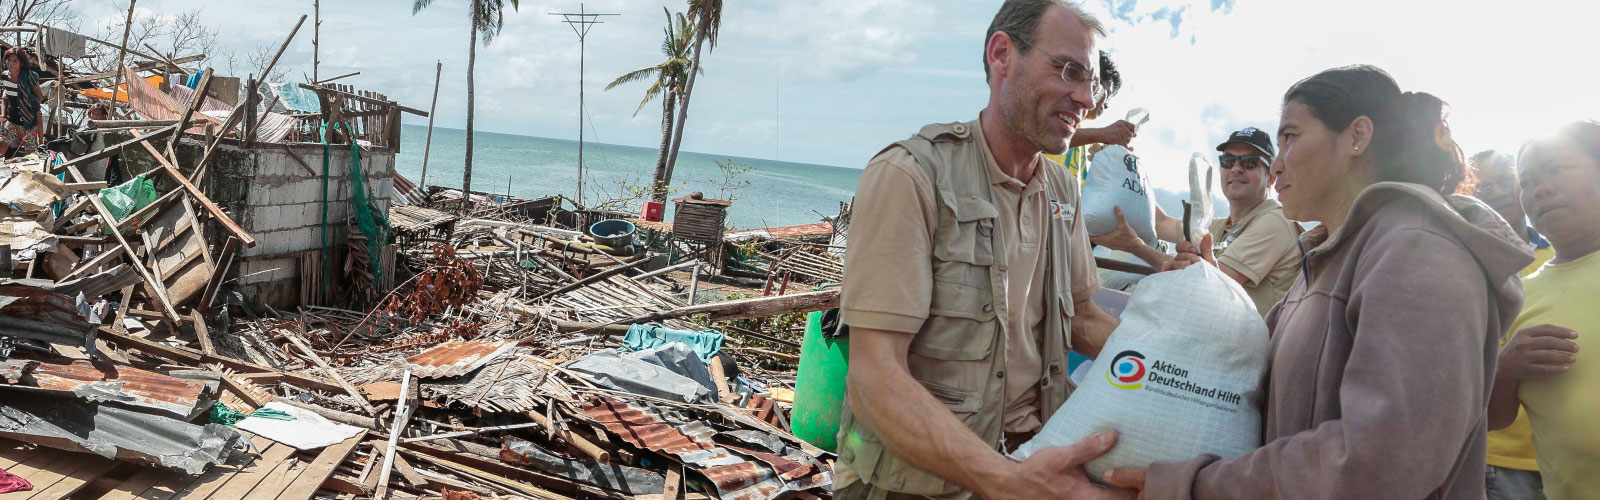 Ein Helfer übergibt einen Sack an einen Betroffenen eines Taifuns auf den Philippinen